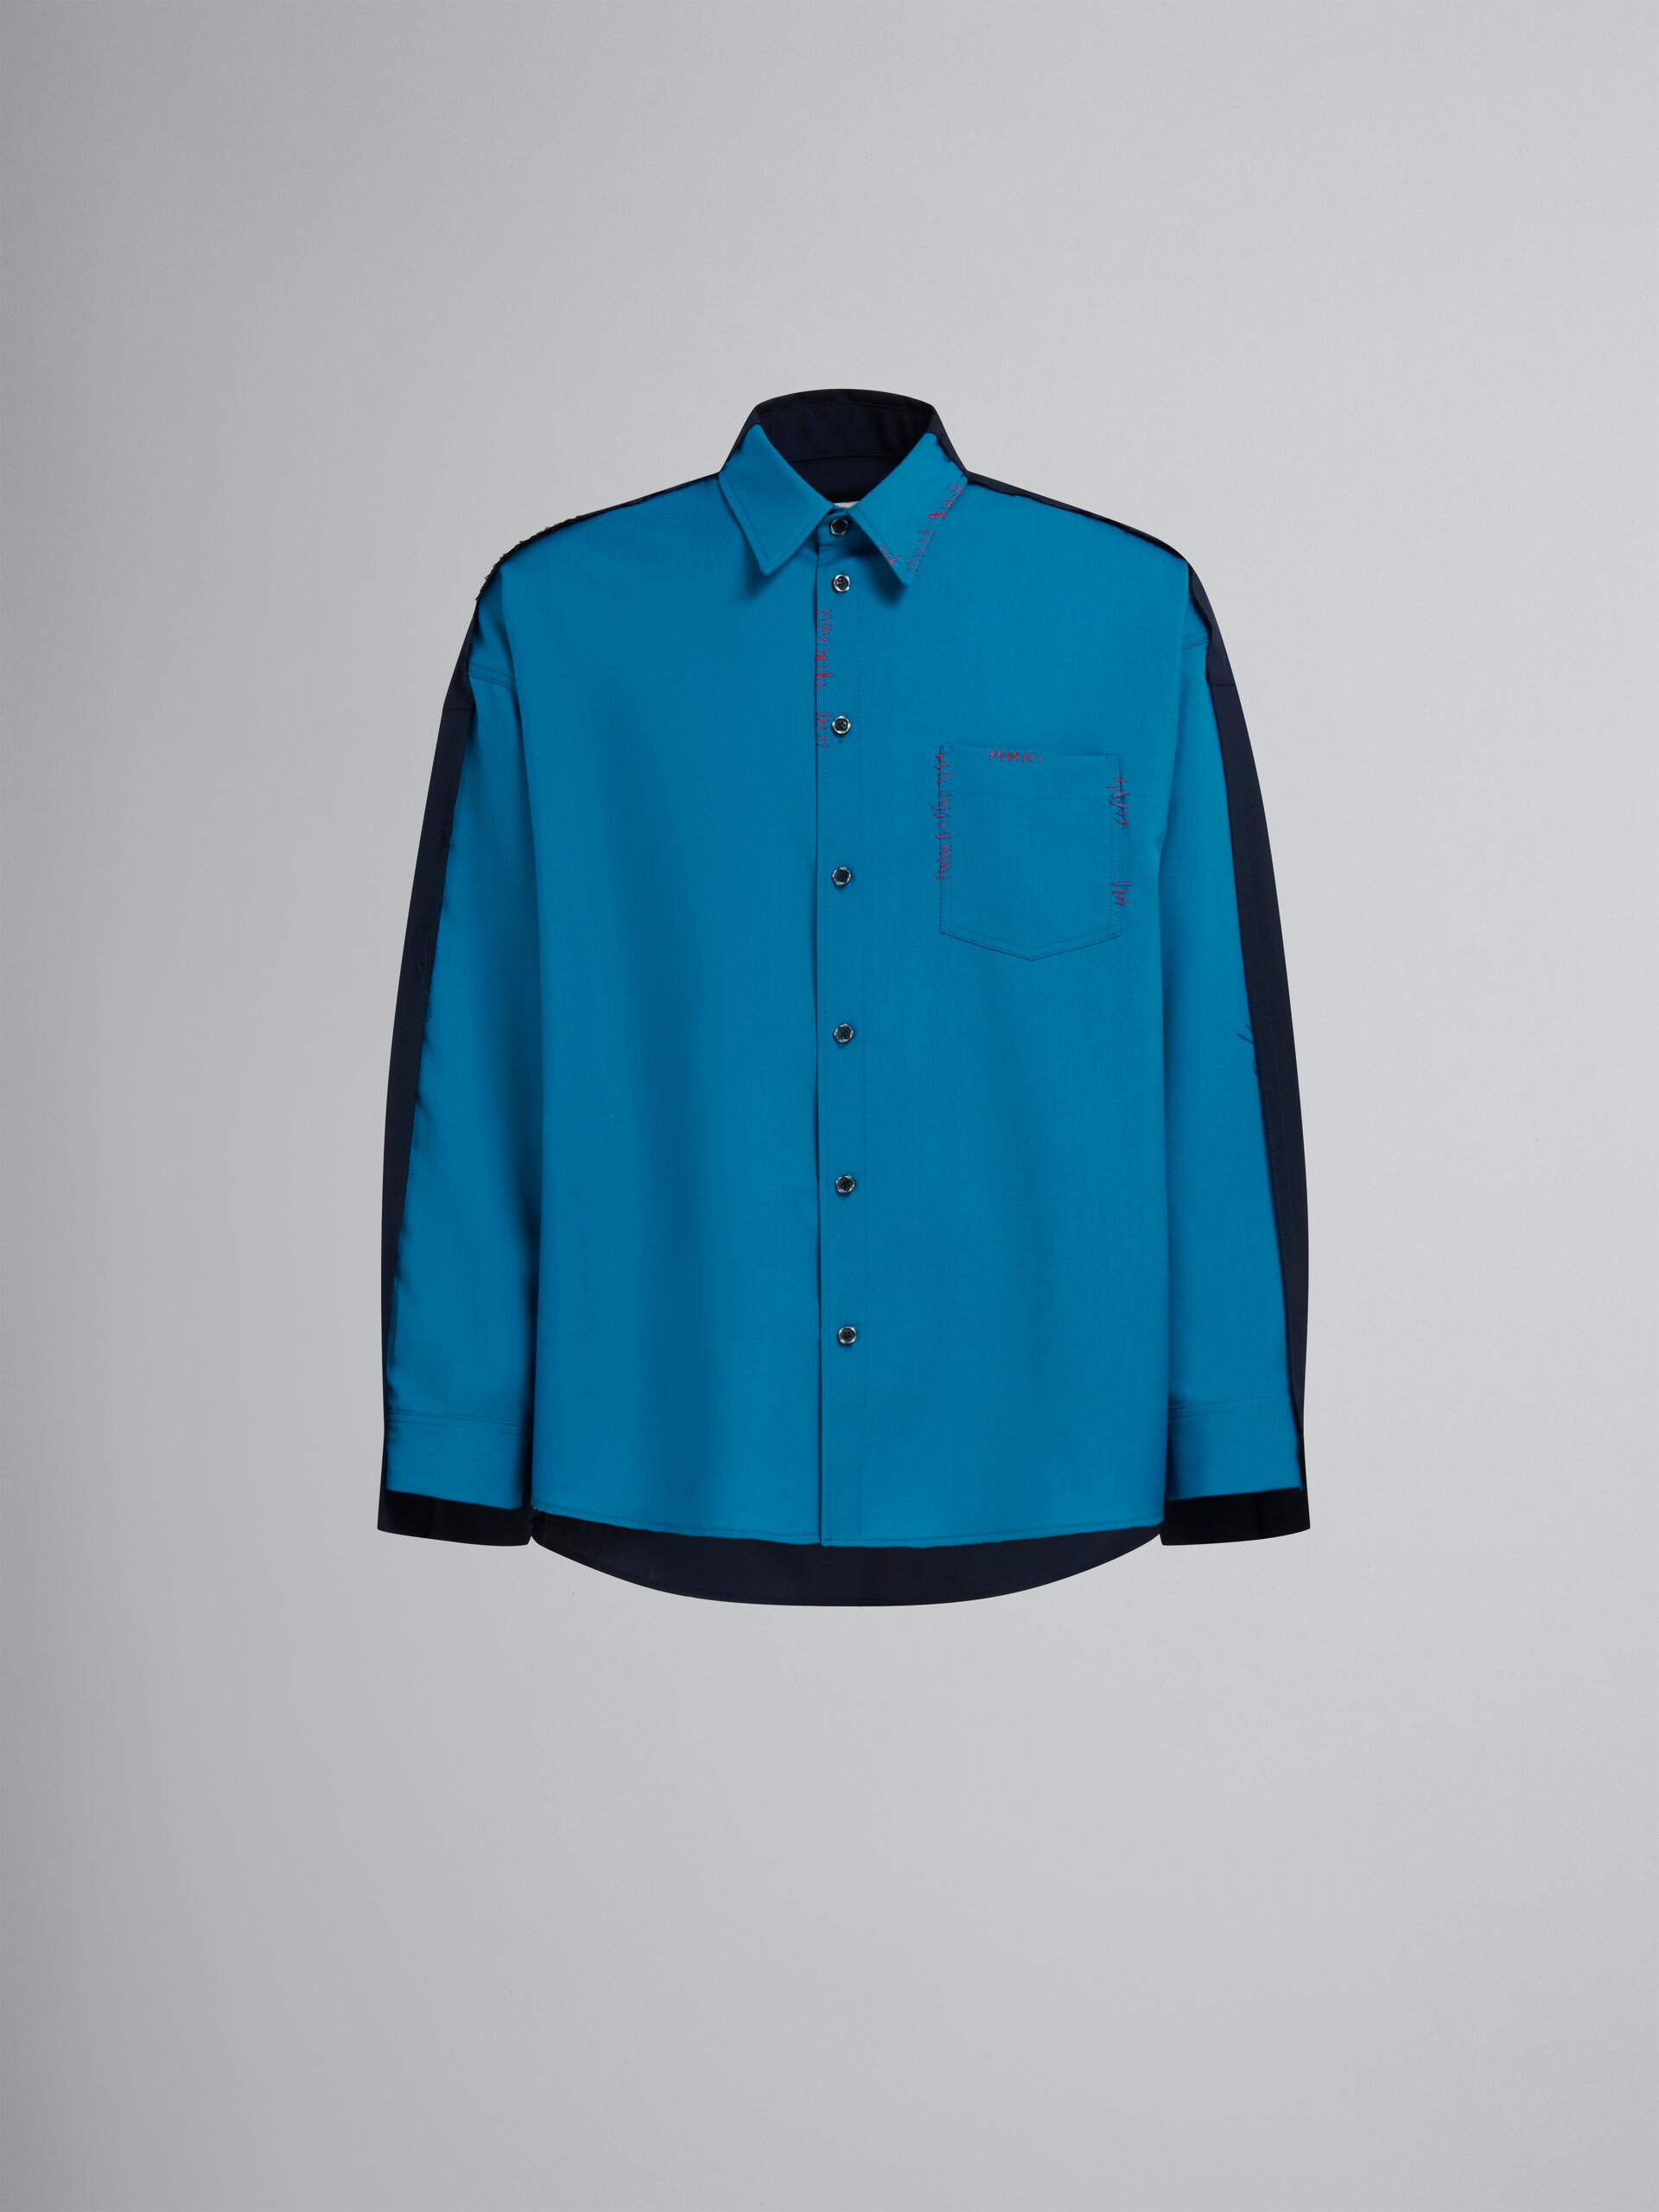 Camicia in fresco lana blu con retro a contrasto - Camicie - Image 1